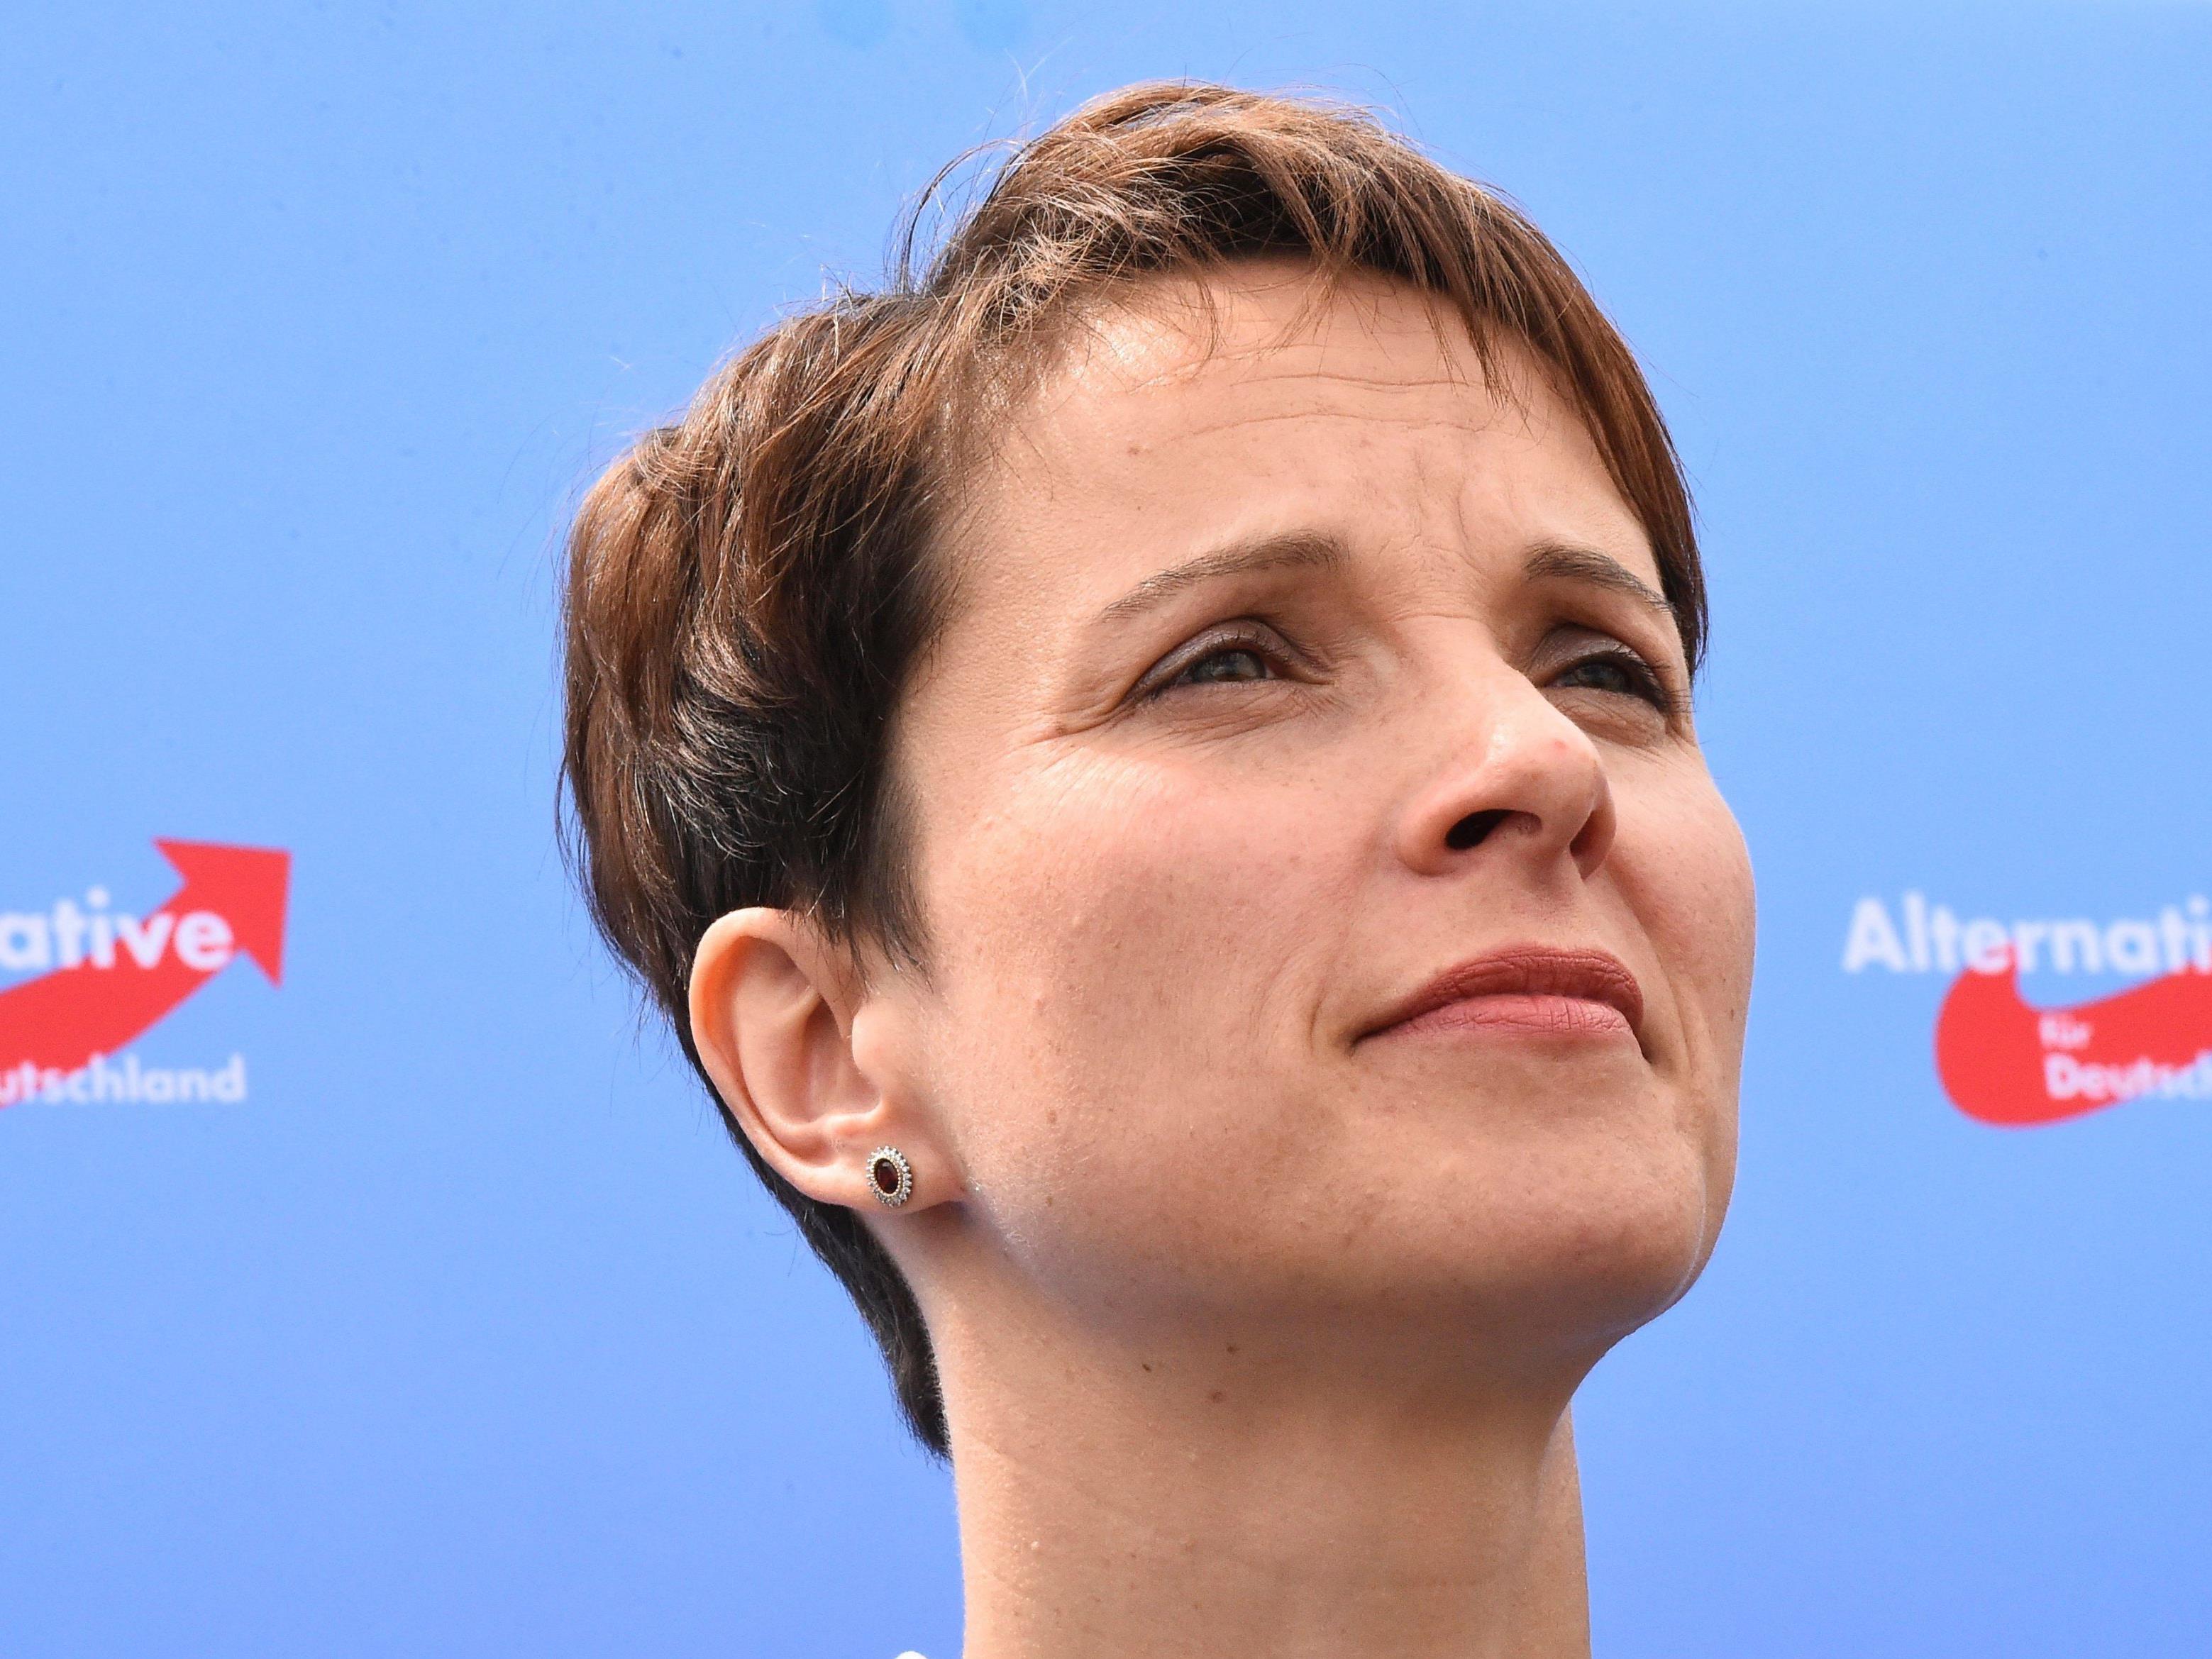 Die AfD-Vorsitzende Frauke Petry fordert Grenzschutz mit allen Mitteln.